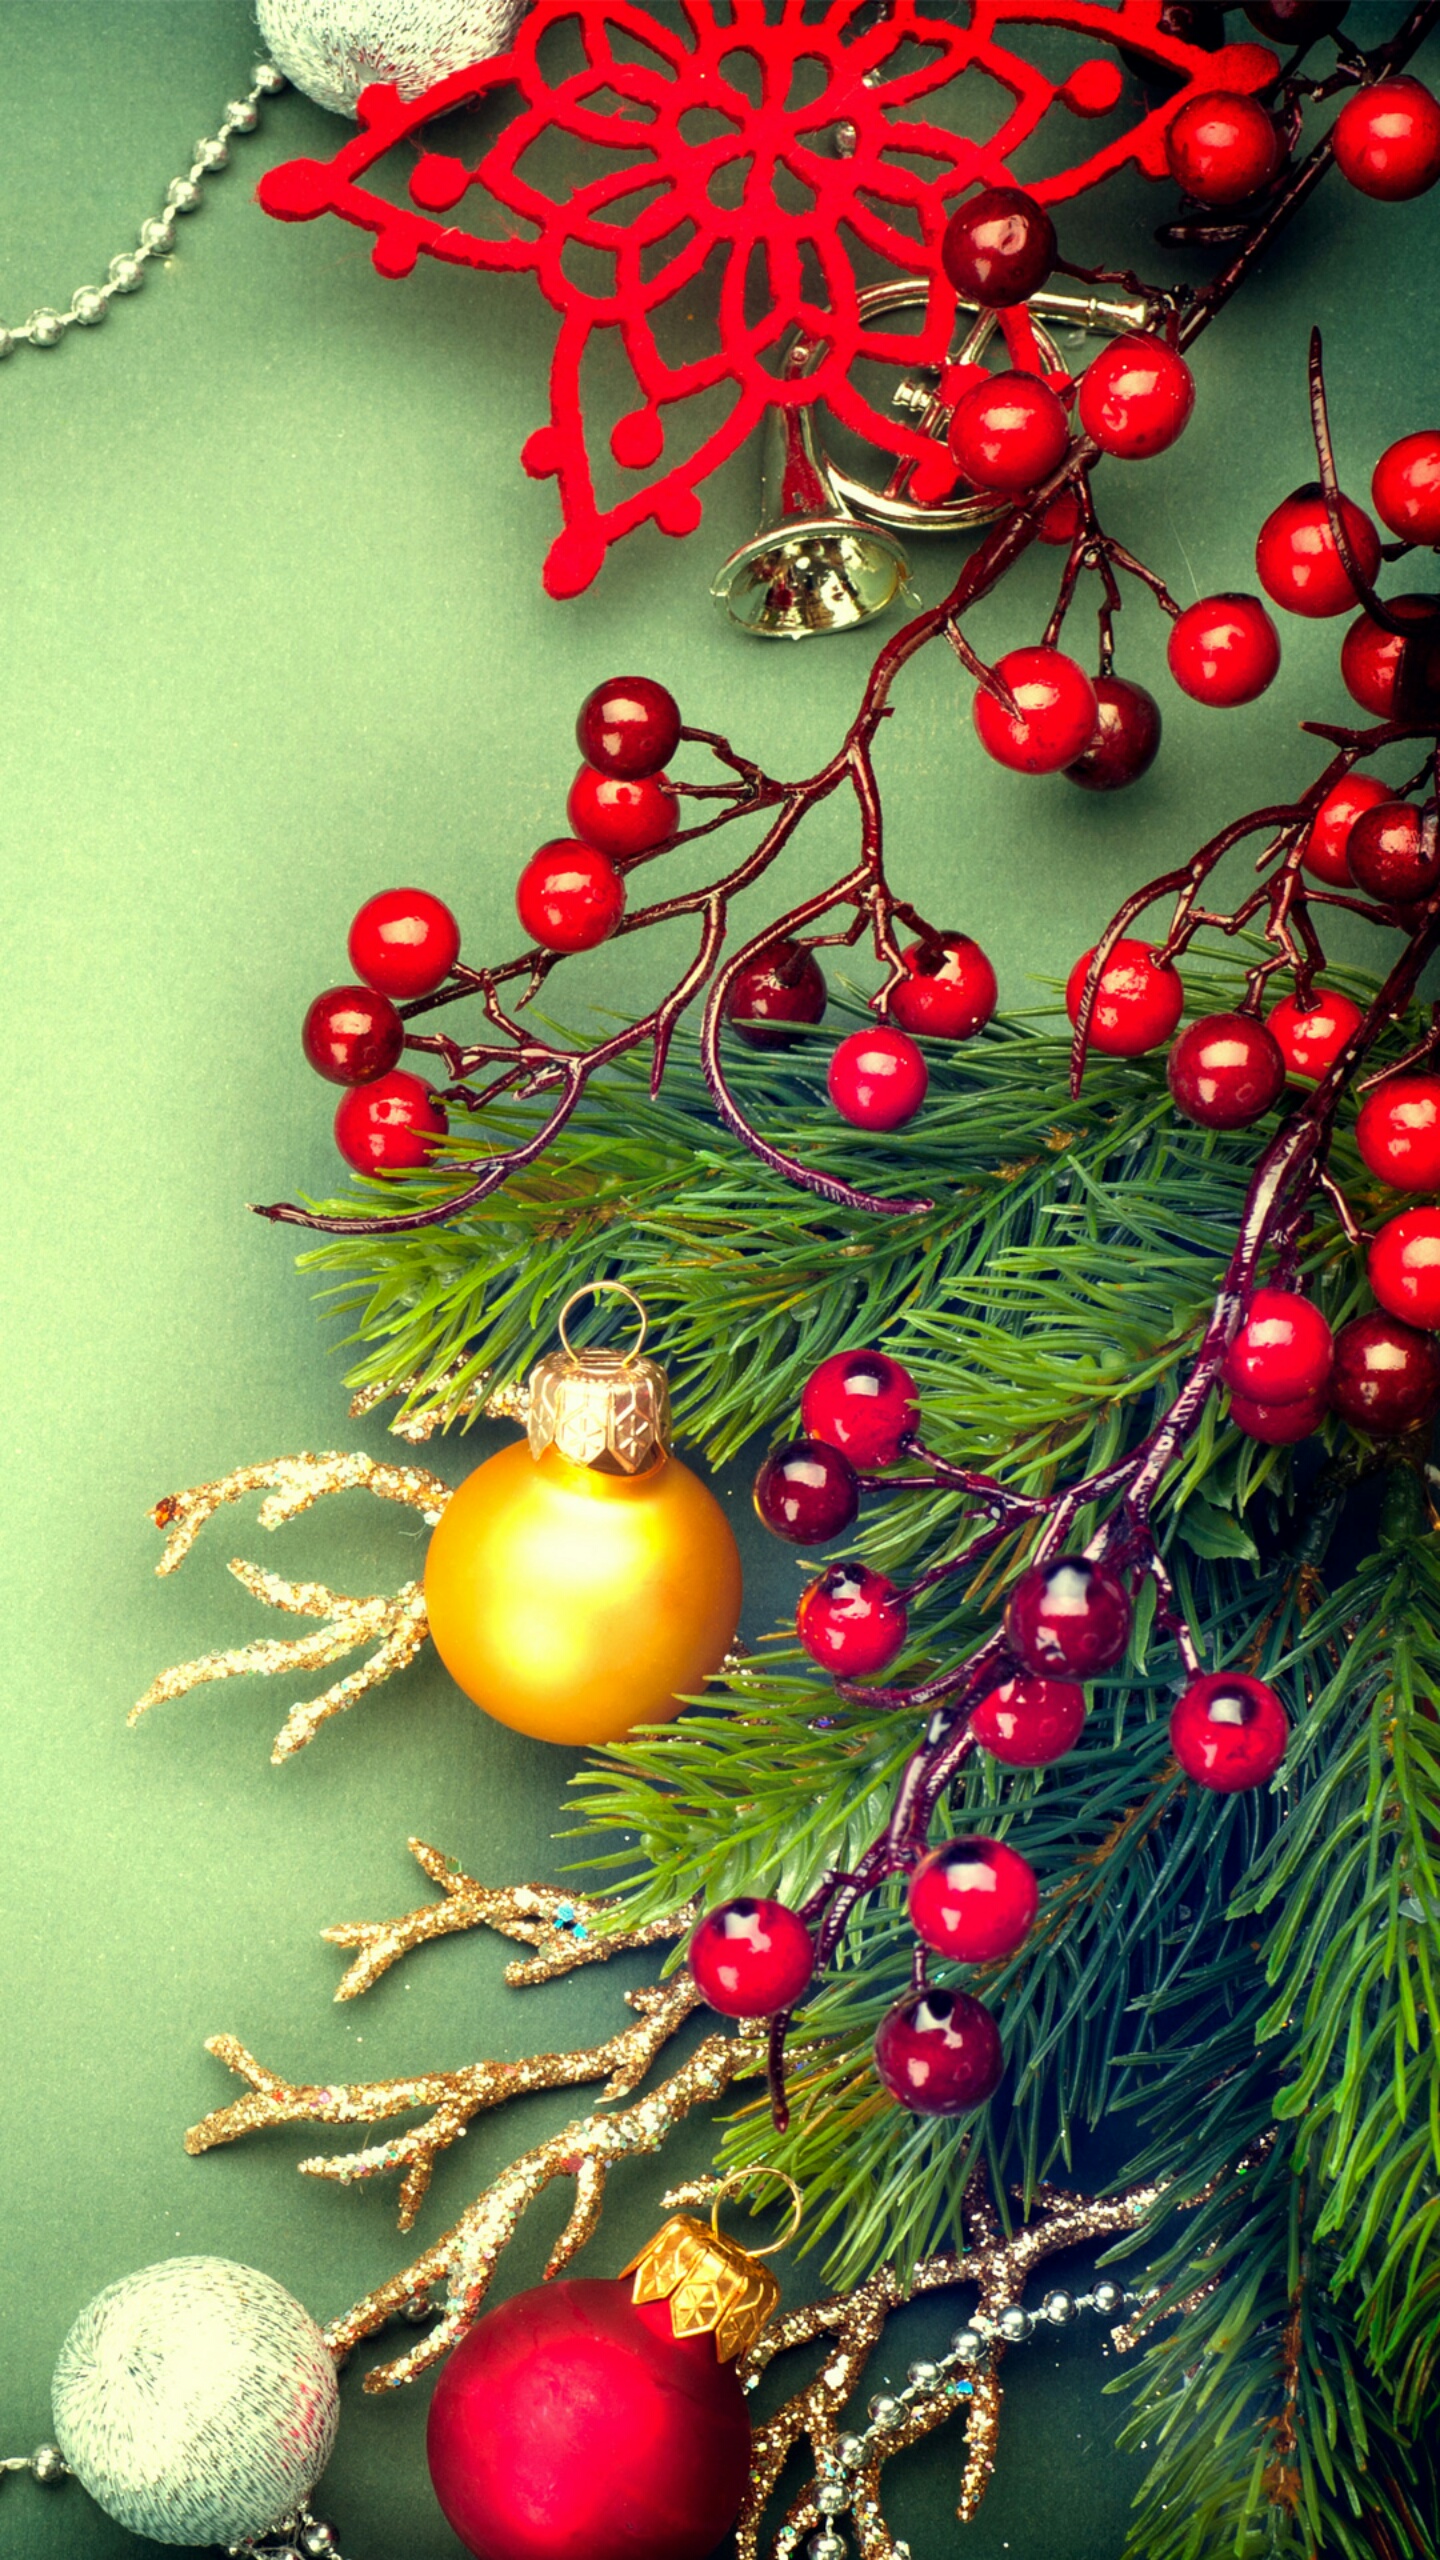 Bộ ảnh nền Giáng Sinh 2013 Full HD tuyệt đẹp cho desktop và mobile